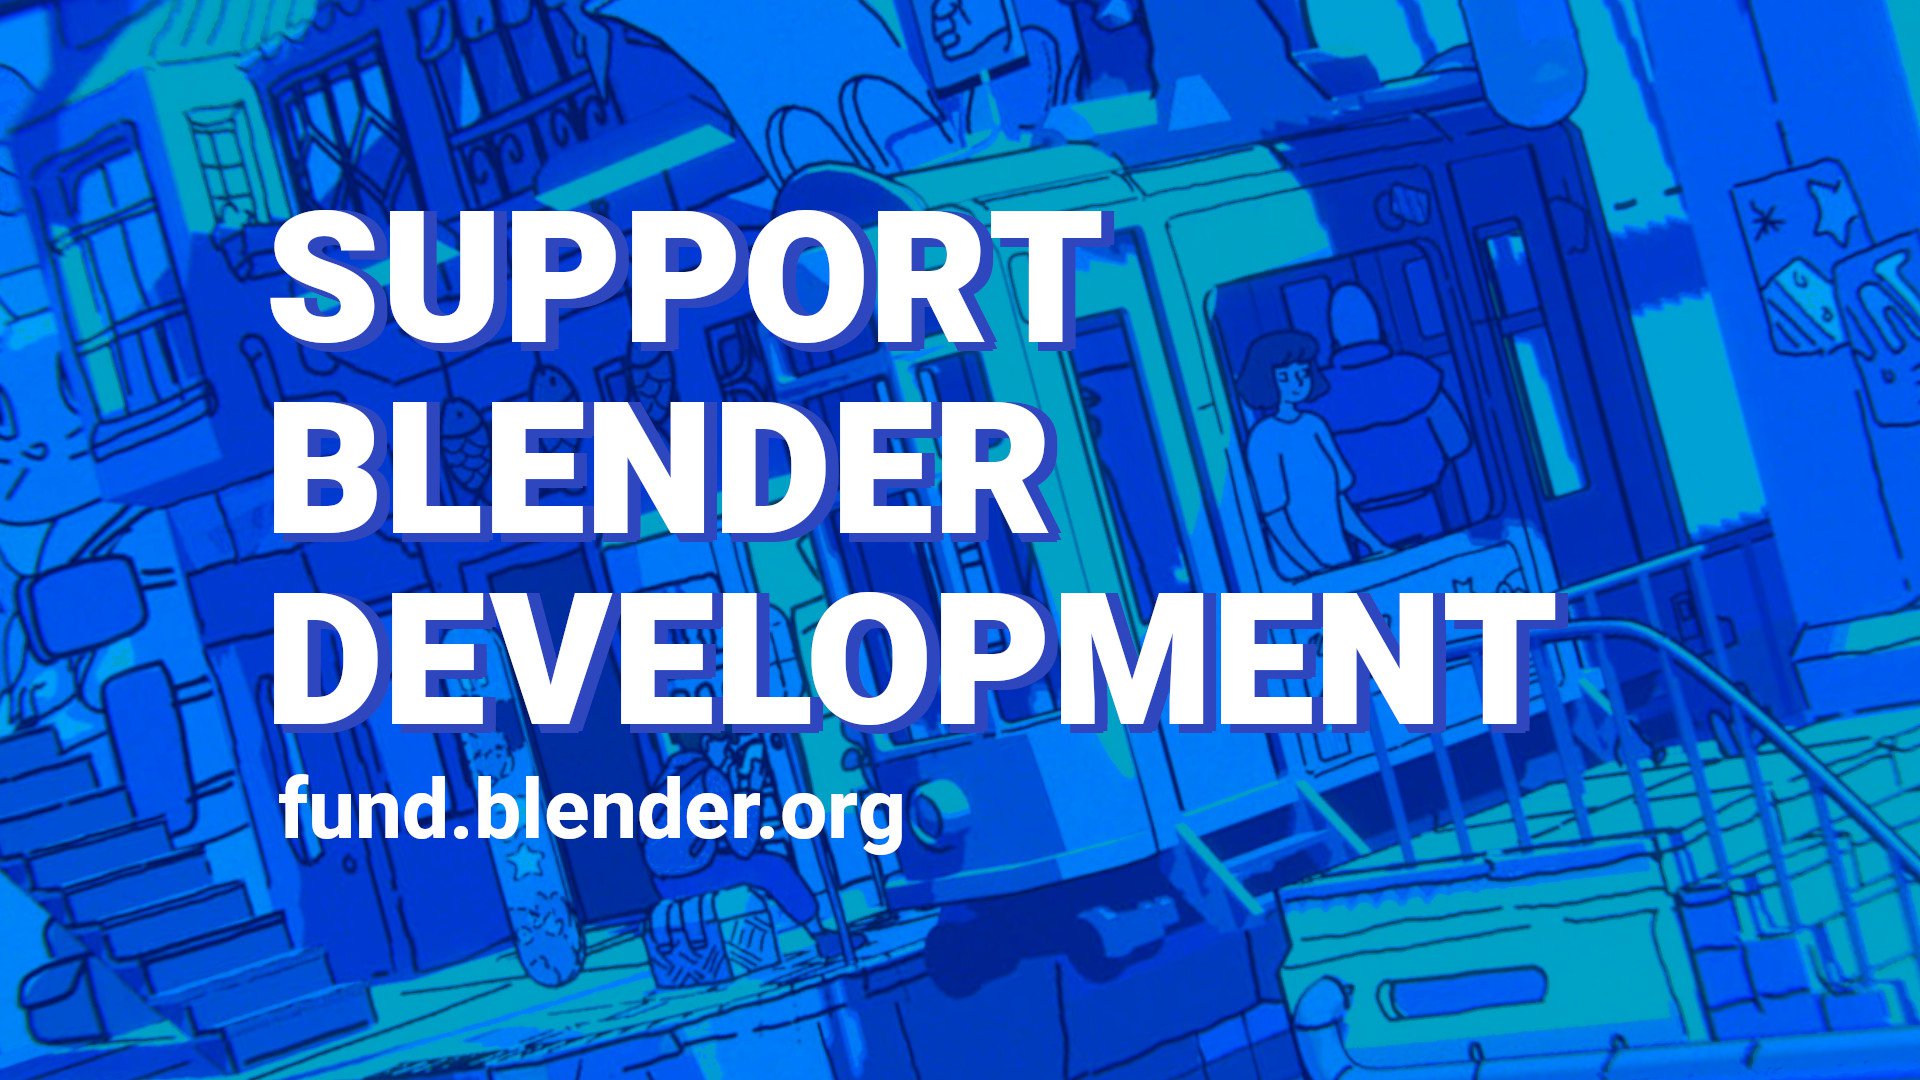 Blender Development Fund